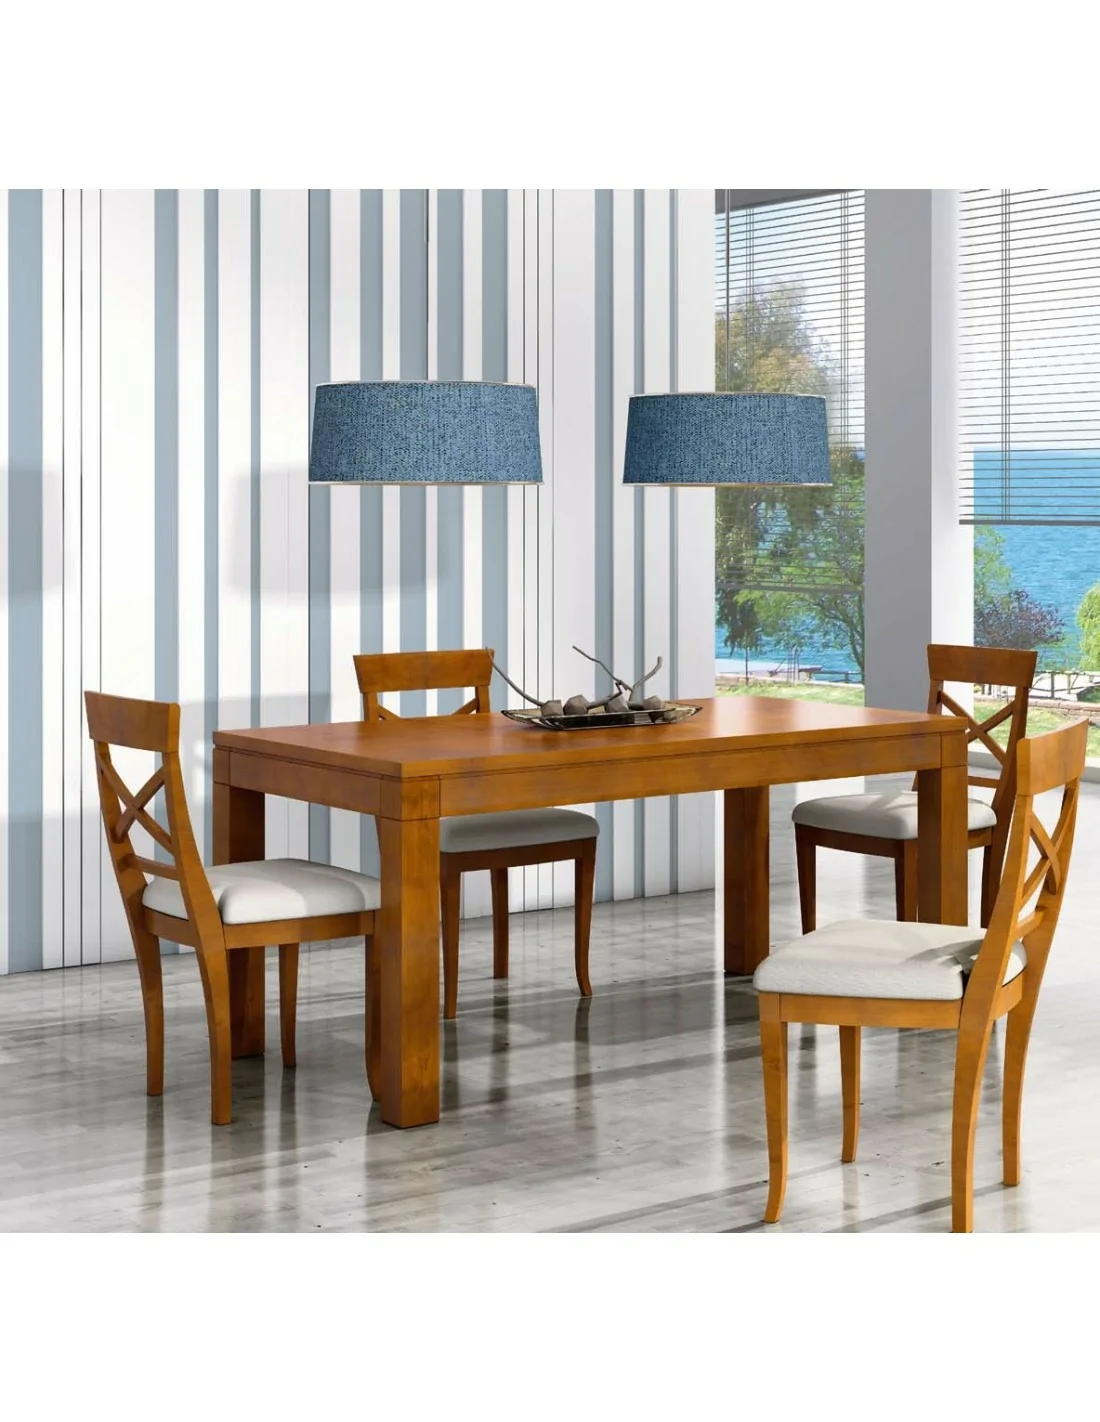 Oferta conjunto de mesa extensible y sillas cocina de diseño moderno